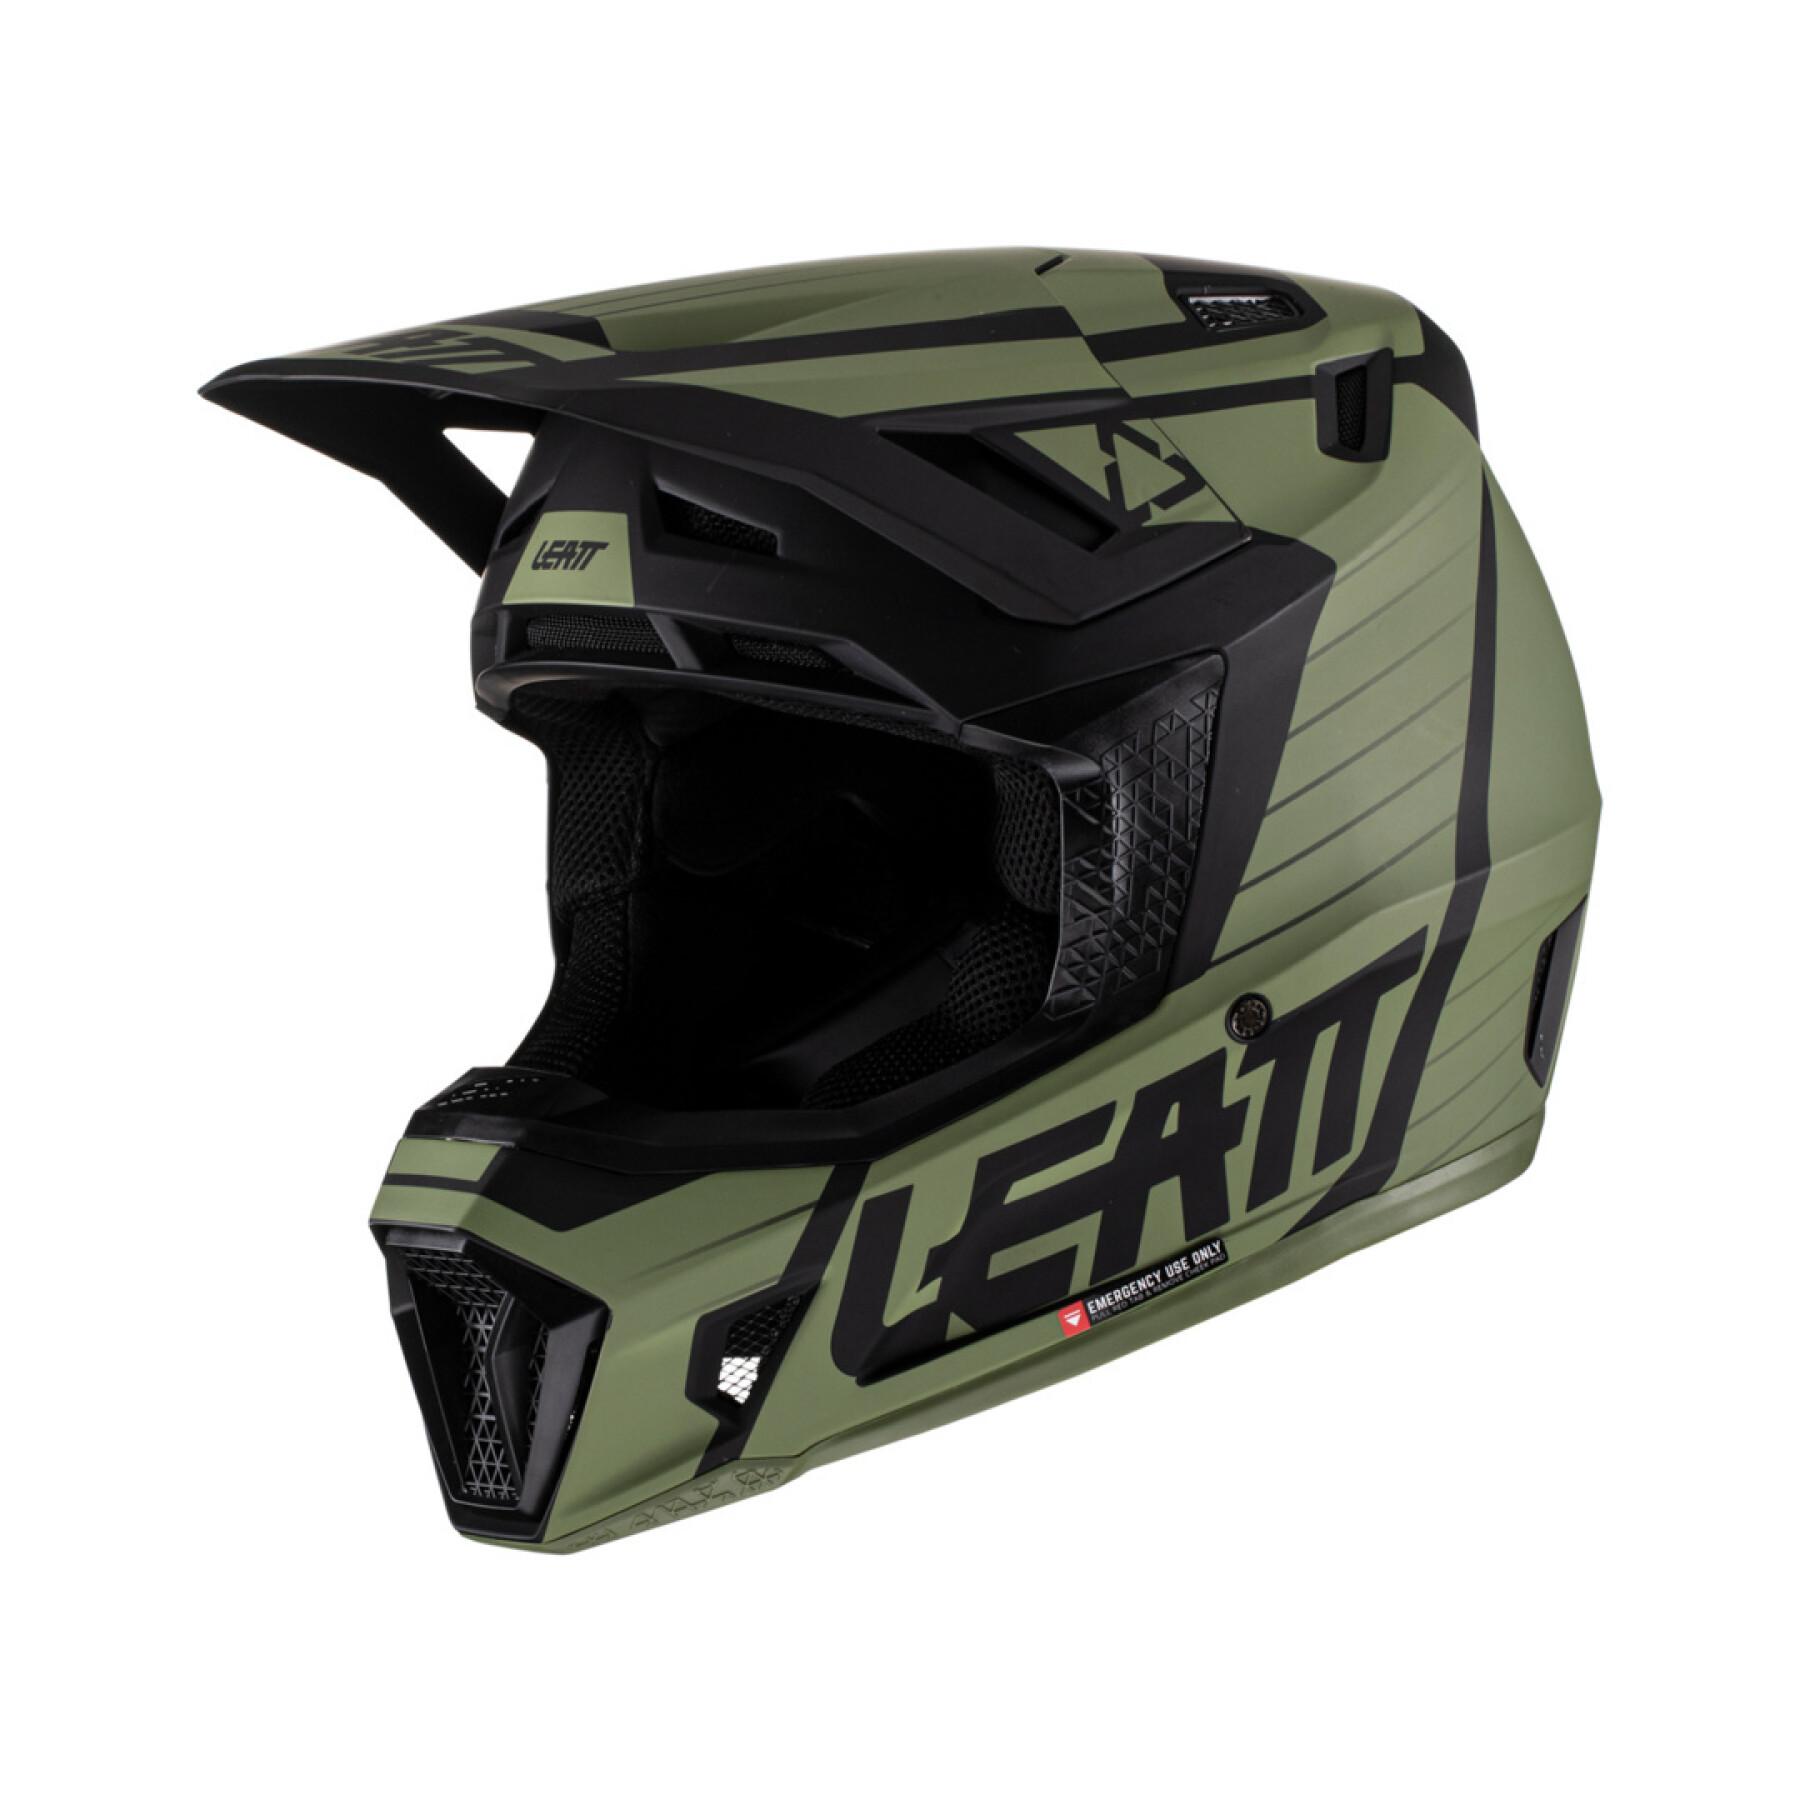 Casque moto cross avec lunettes de protection Leatt 7.5 V22 Graphic